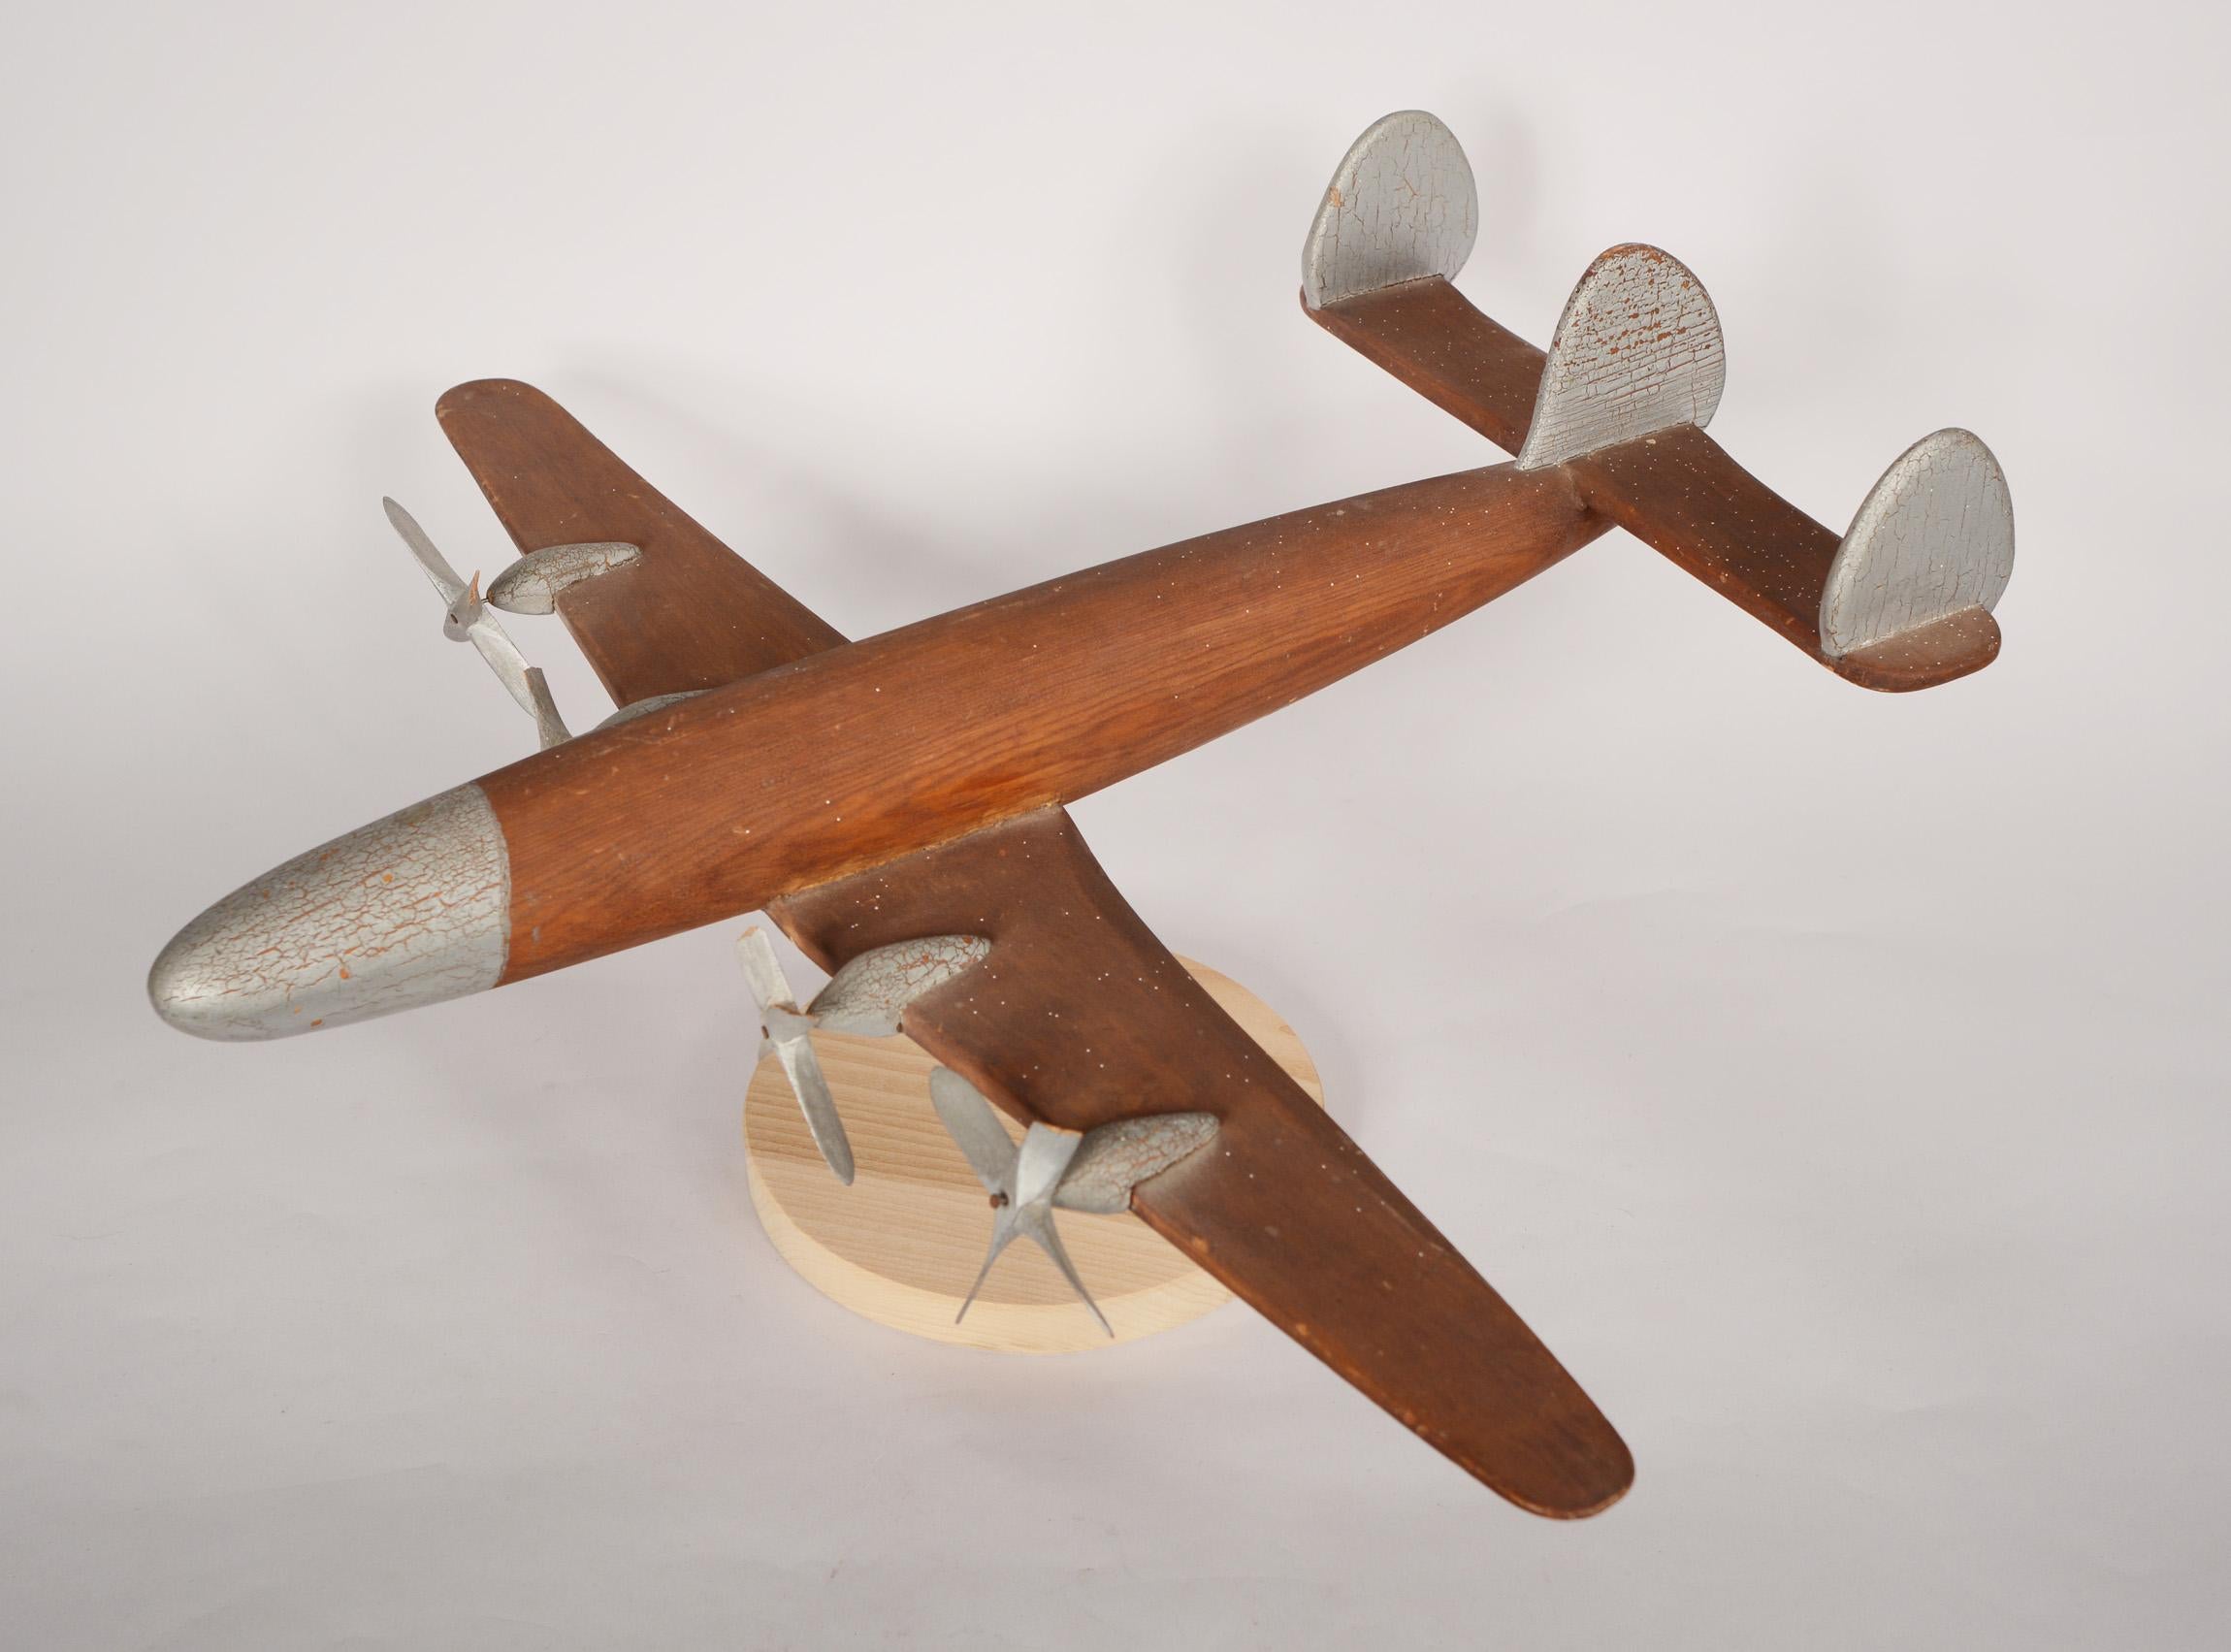 Grand modèle d'un Lockheed Constellation réalisé par Charles Long. L'avion est fait de bois rouge. Les hélices sont en pin. Charles était capitaine dans l'armée de l'air et je crois qu'il a ensuite travaillé pour Lockheed. Il y a quelques pales